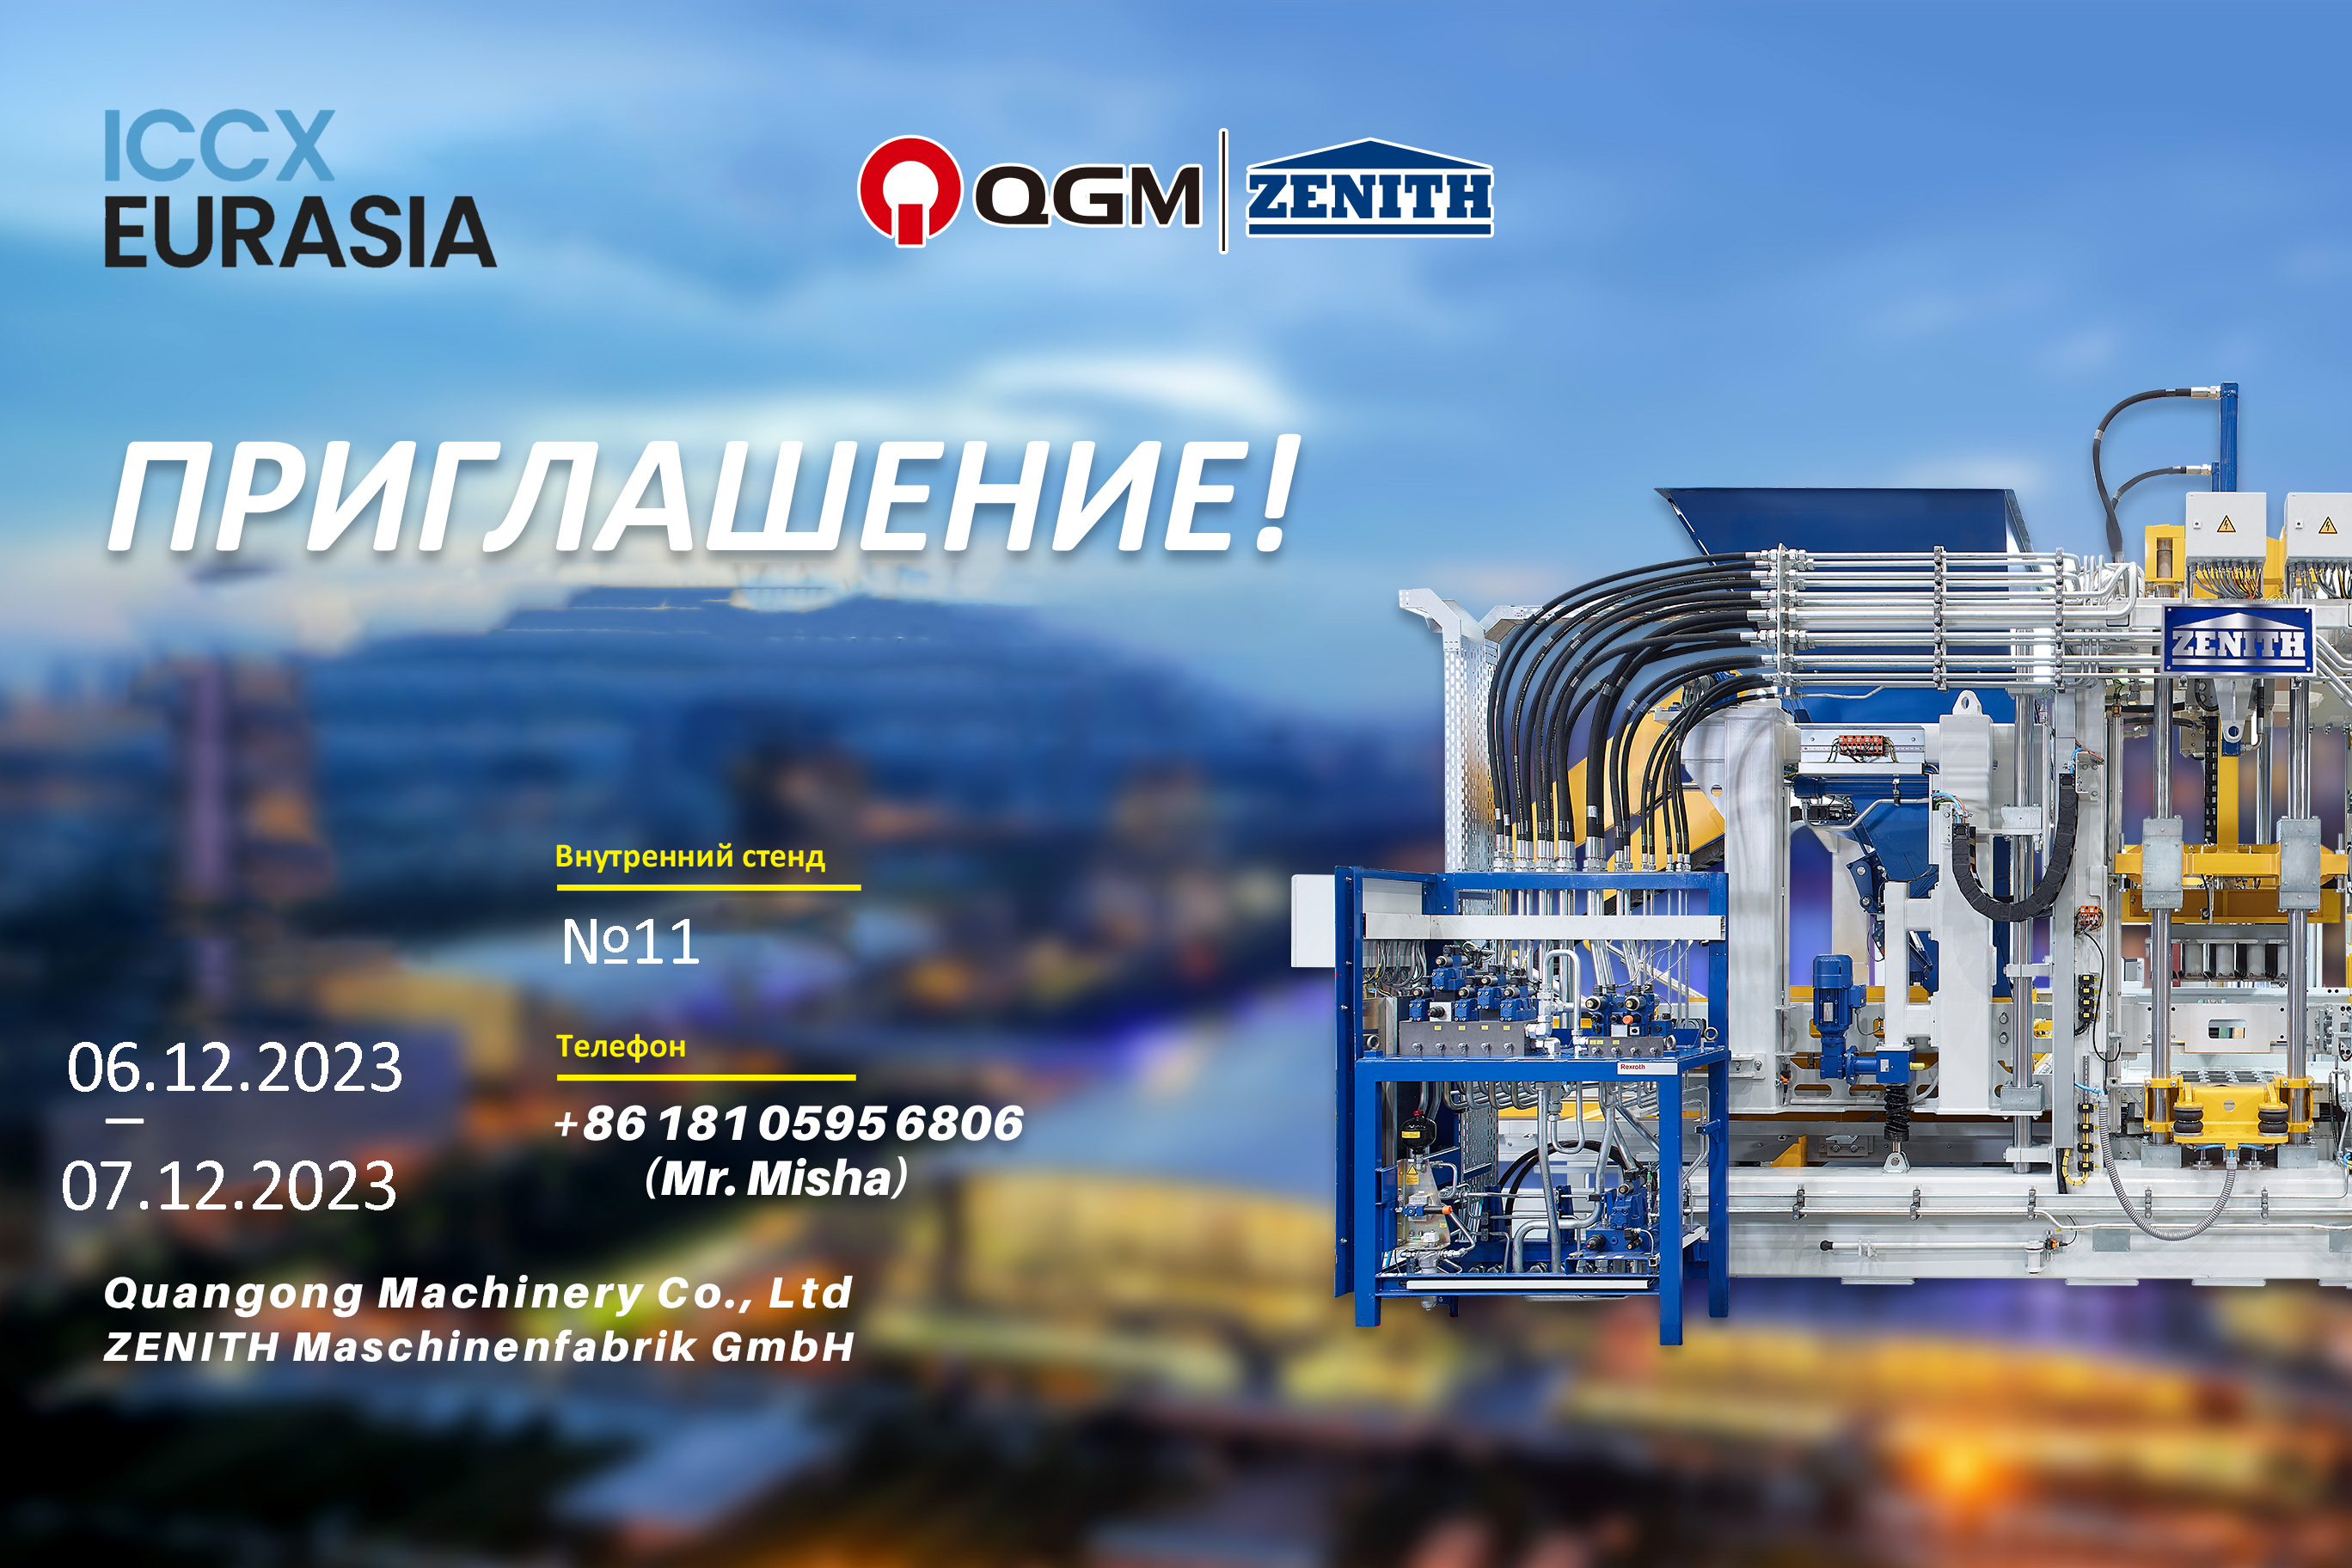 QGM-ZENITH conjunto en ICCX Eurasia 2023 del 6 al 7 de diciembre en Almaty, Kazajstán.